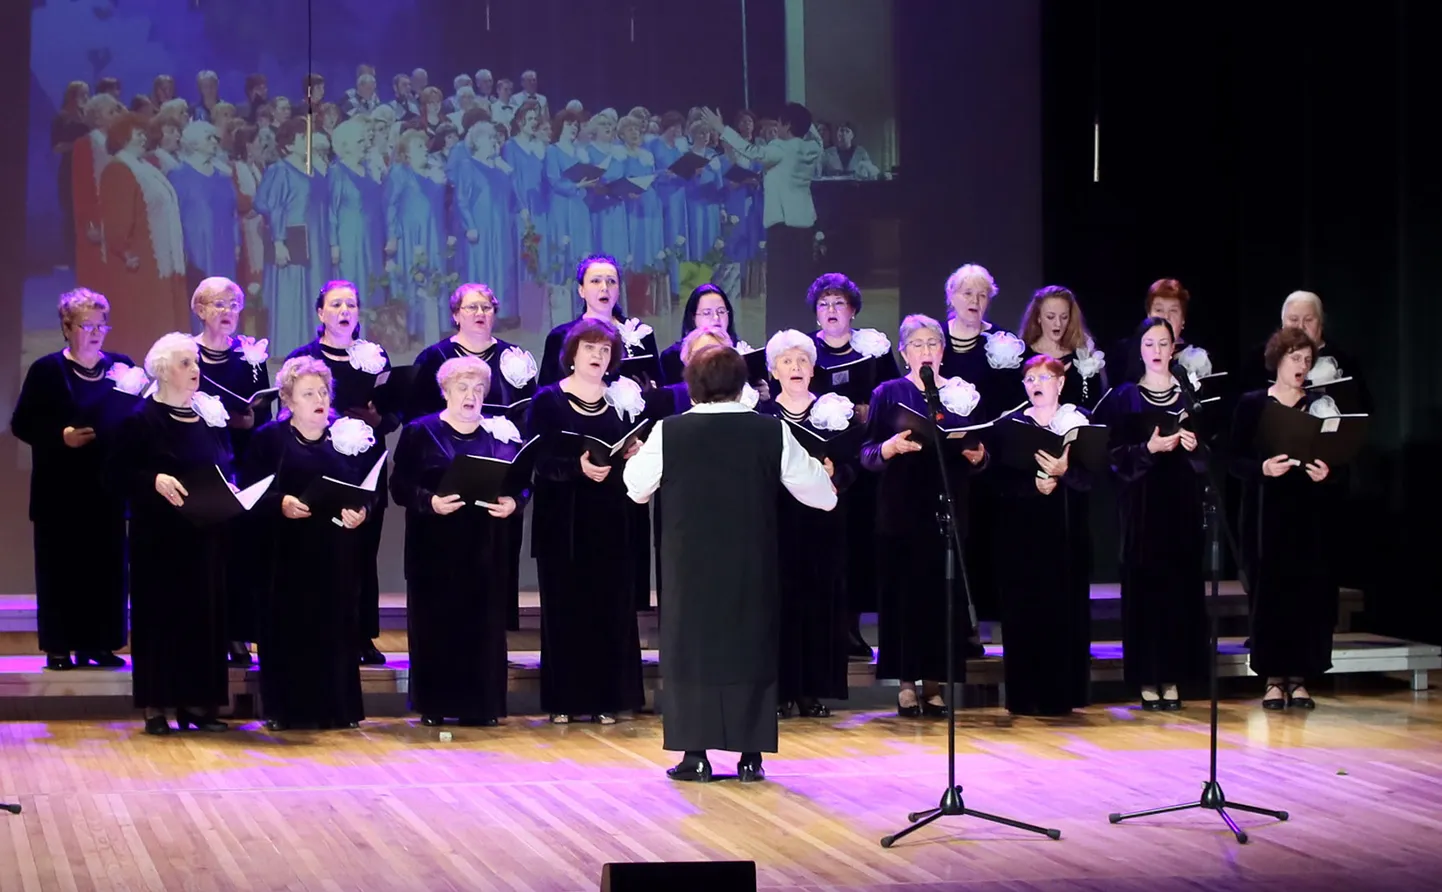 Kohtla-Järve akadeemiline naiskoor Lada tähistas mullu oma 70 aasta juubelit ja jätkab linnarahva rõõmustamist oma lauludega.